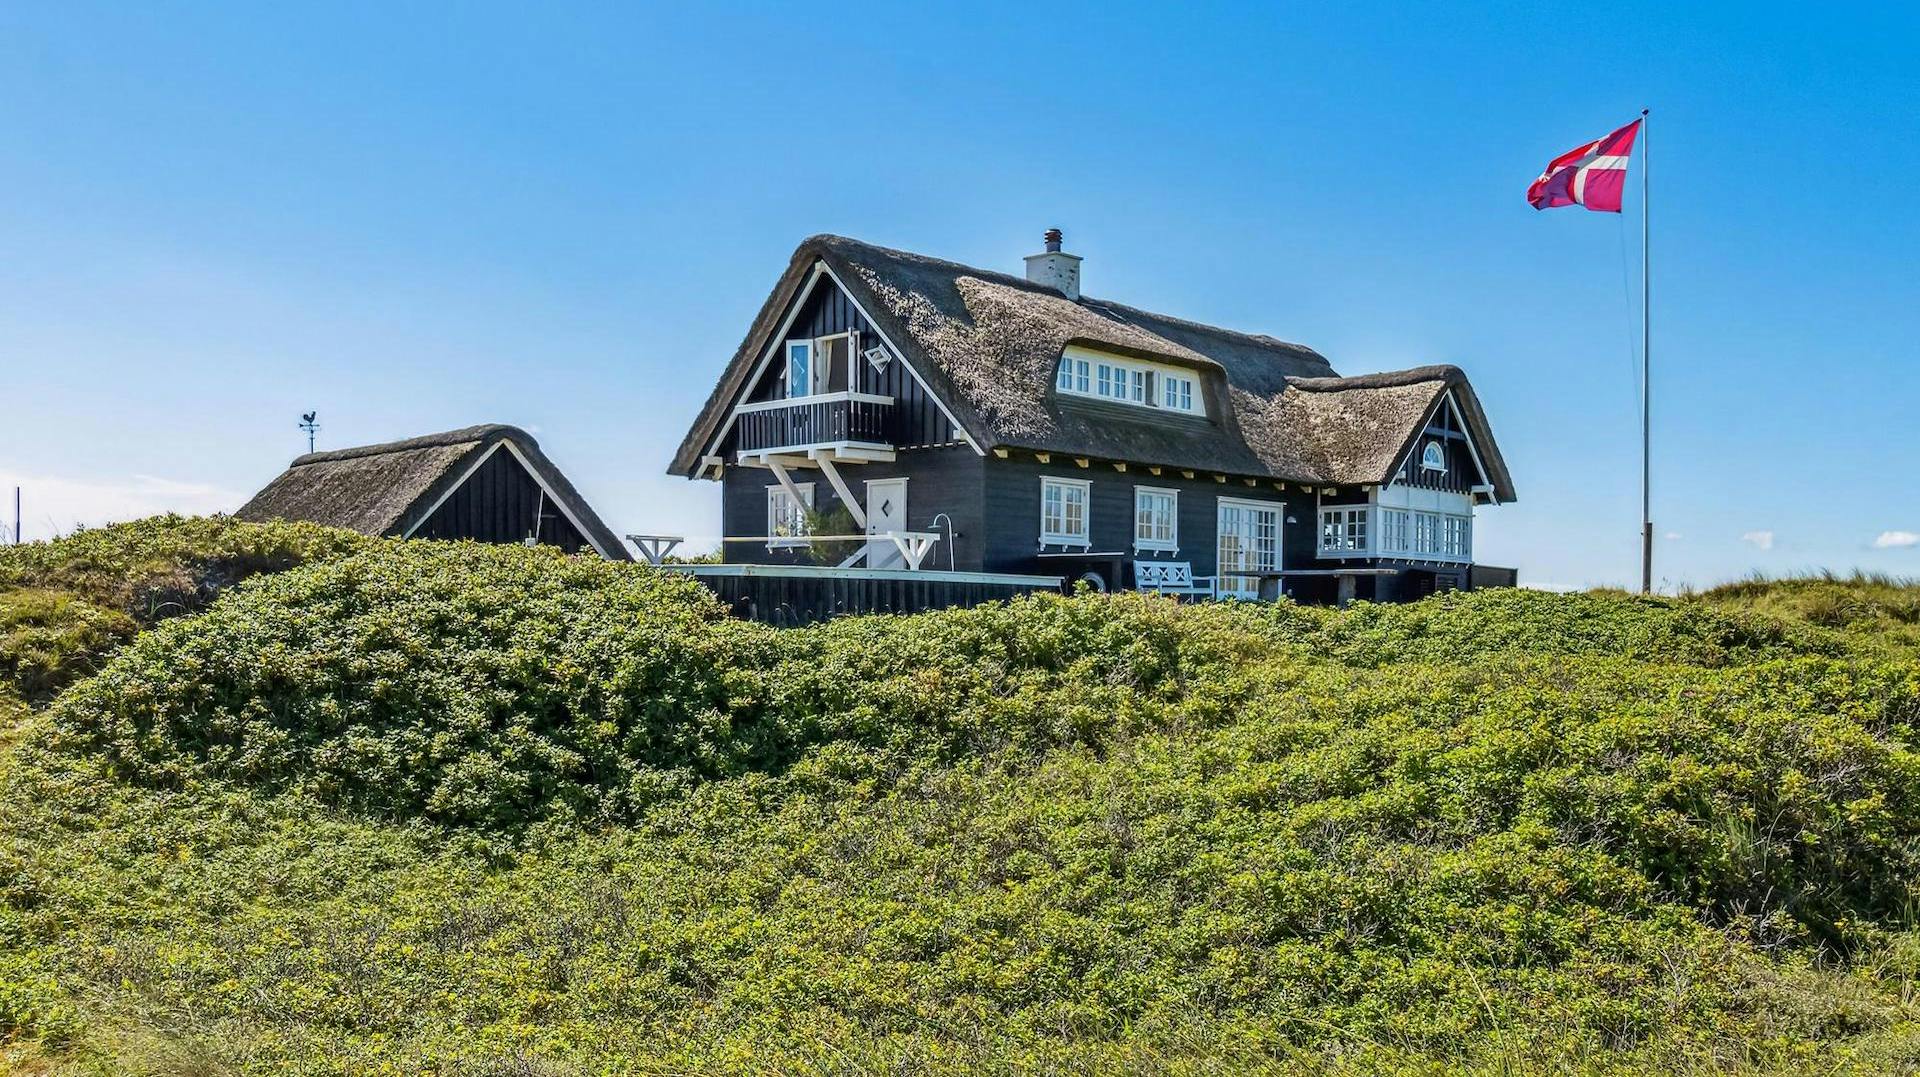 BUM! Jyllands dyreste sommerhus er 155kvadratmeter stort, og ligger helt ud til havet. Skal du have fingre i det, skal der 25 millioner kroner op af lommen.&nbsp;